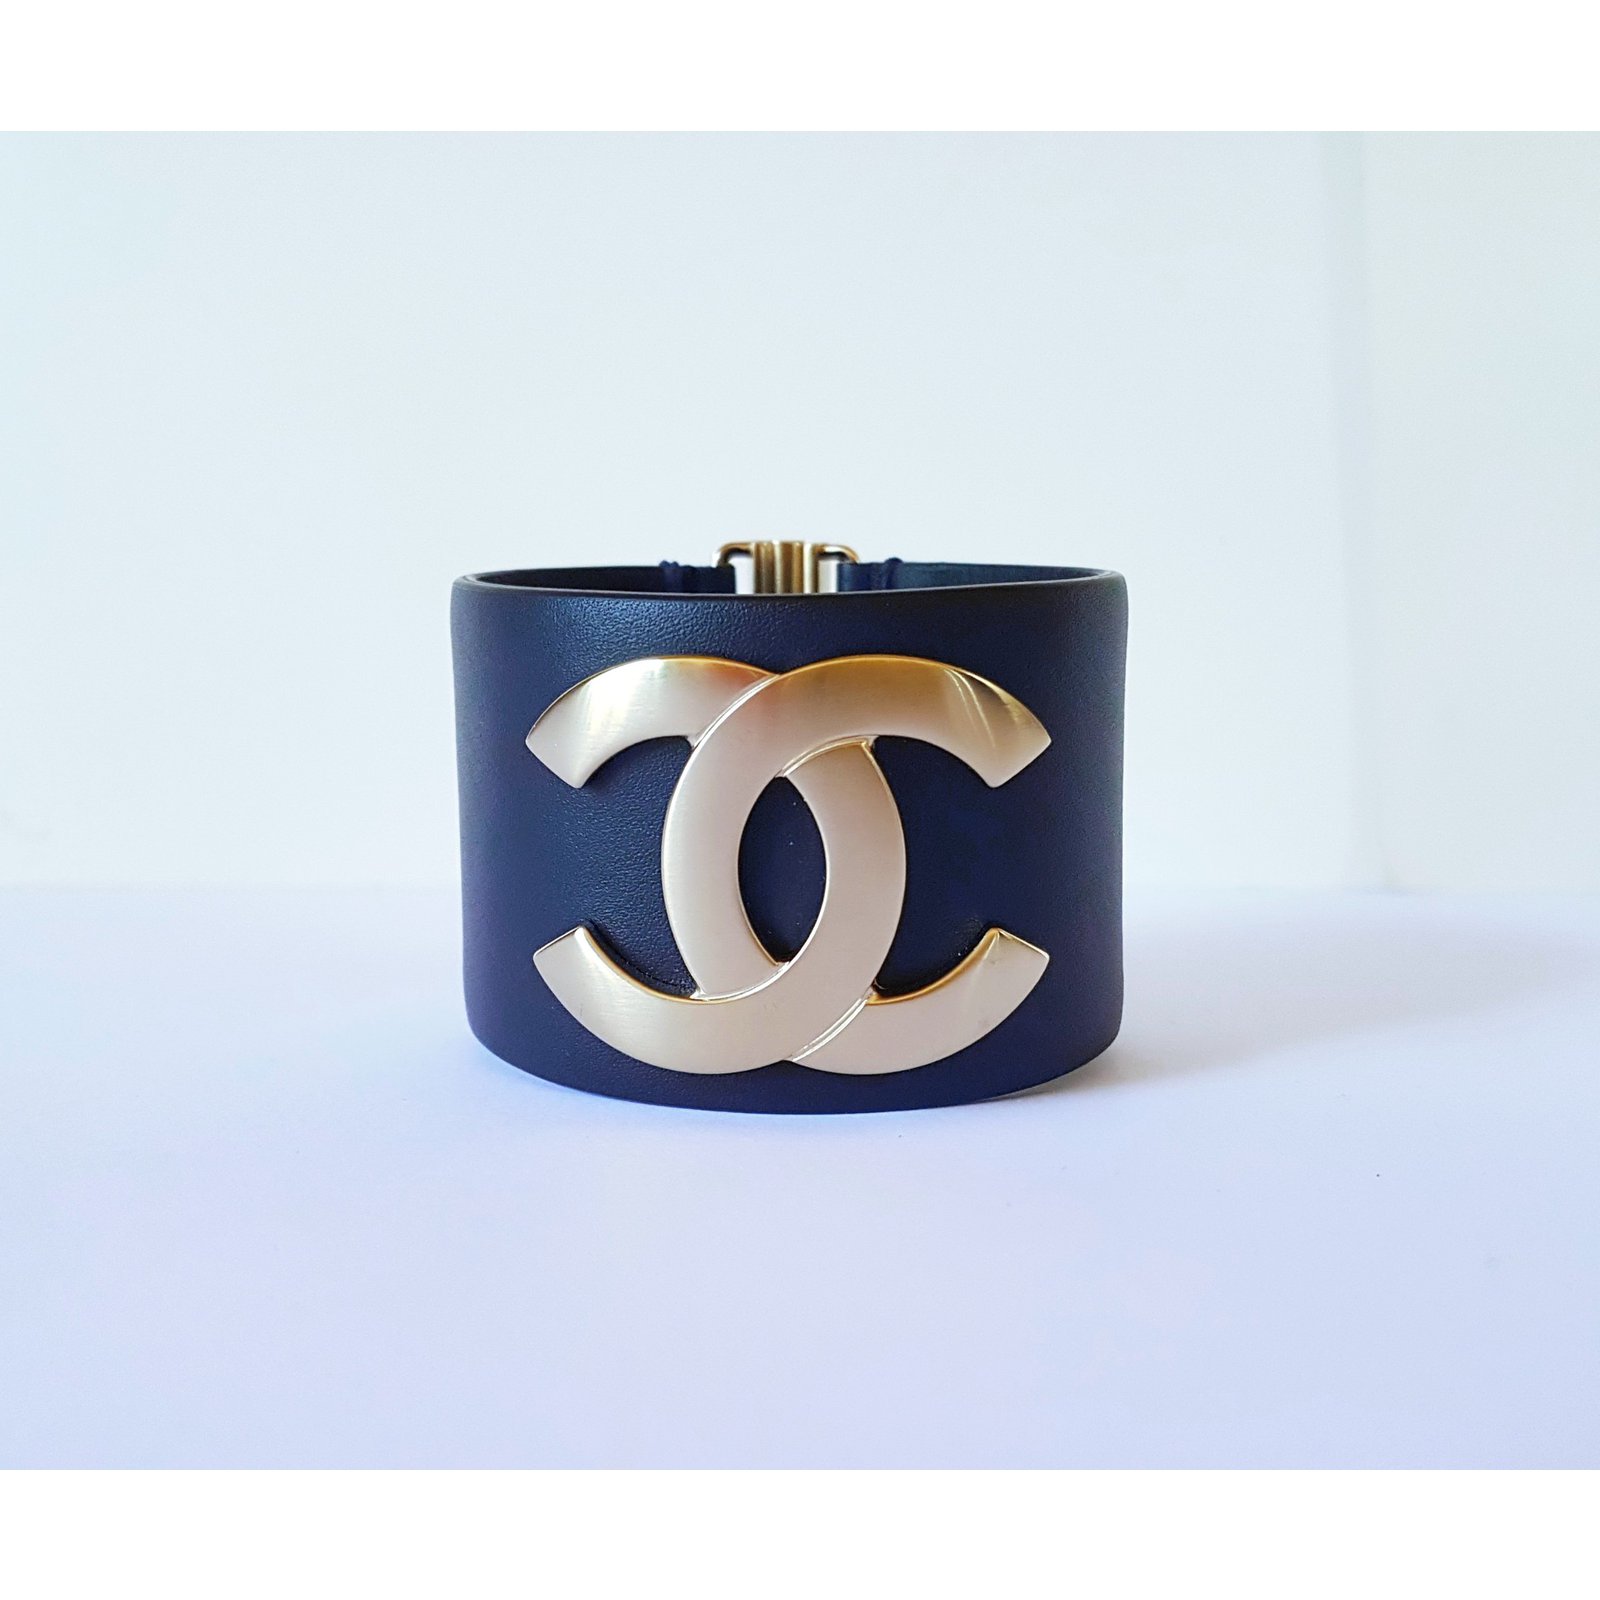 Chanel Bracelets Navy blue